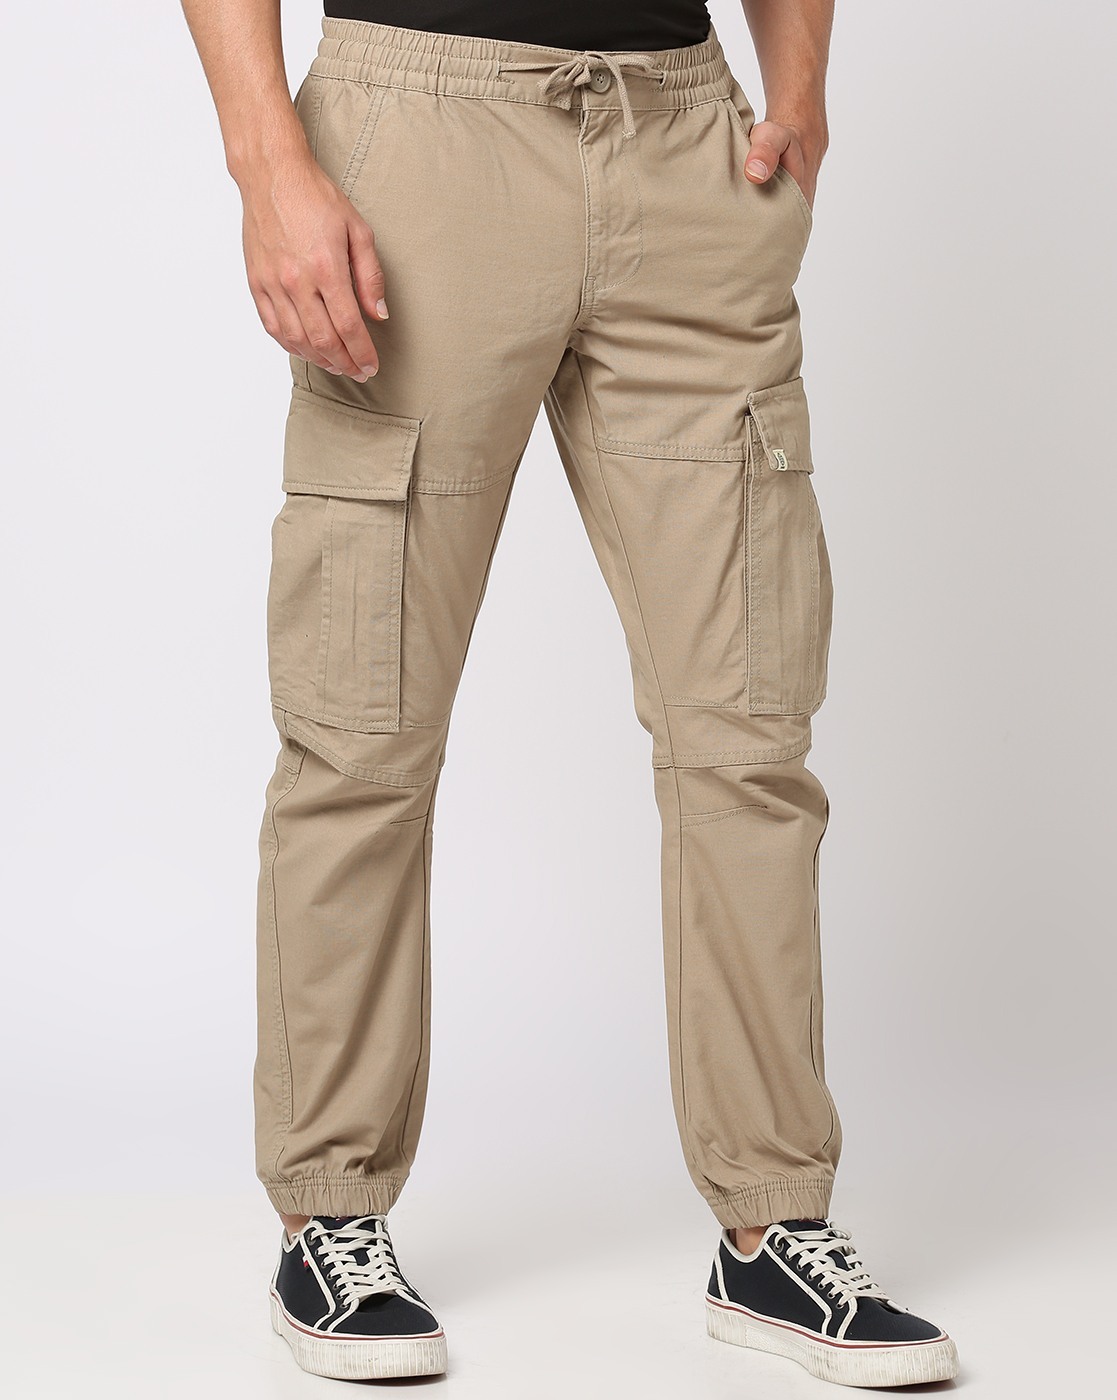 Buy Khaki Trousers & Pants for Men by Tim Paris Online | Ajio.com